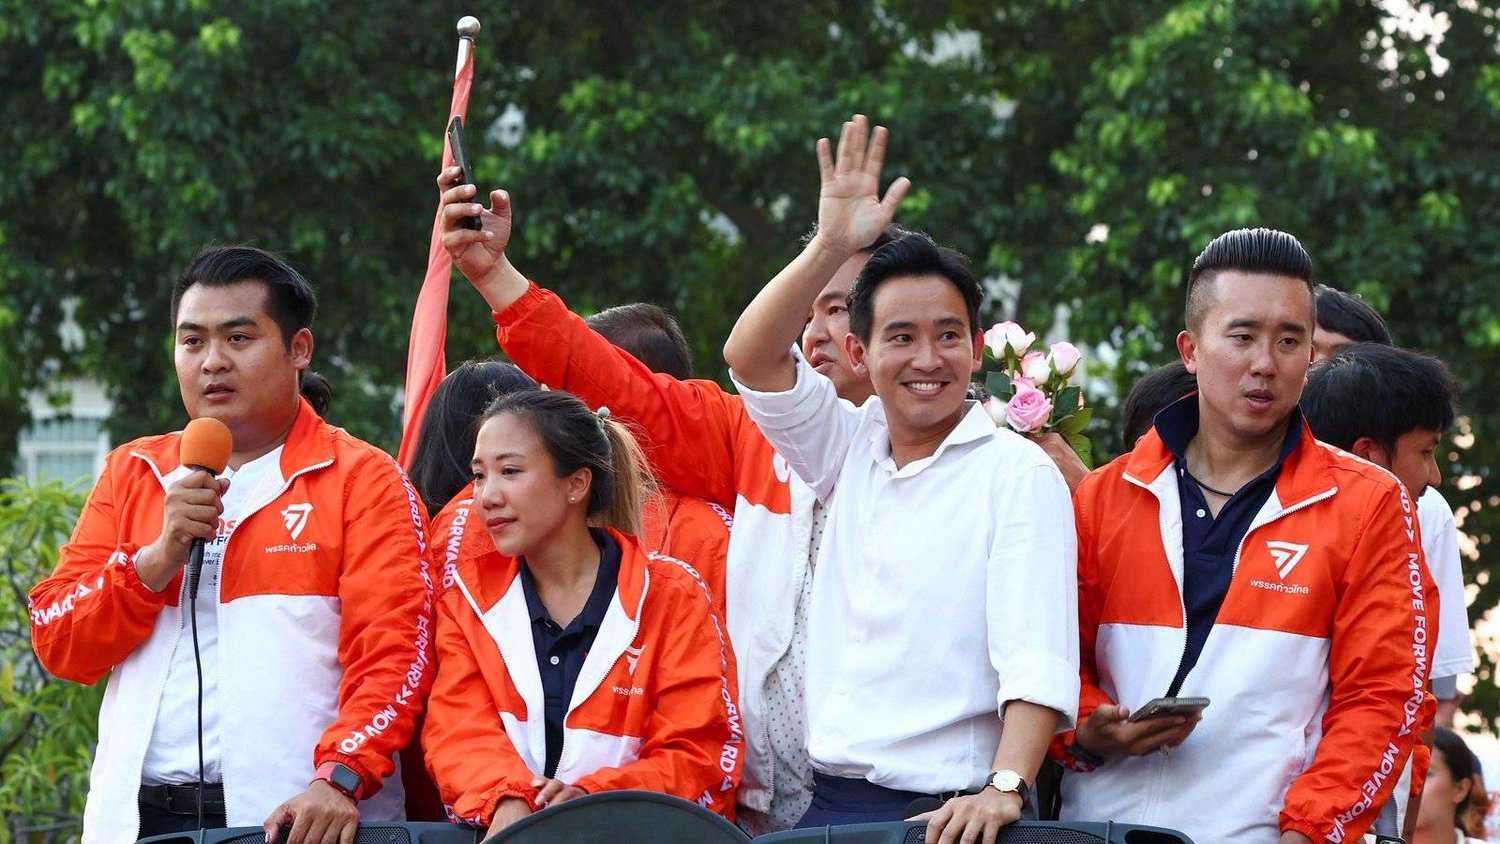 تساؤلات وتحديات بعد الفوز الكبير لأحزاب المعارضة التايلندية